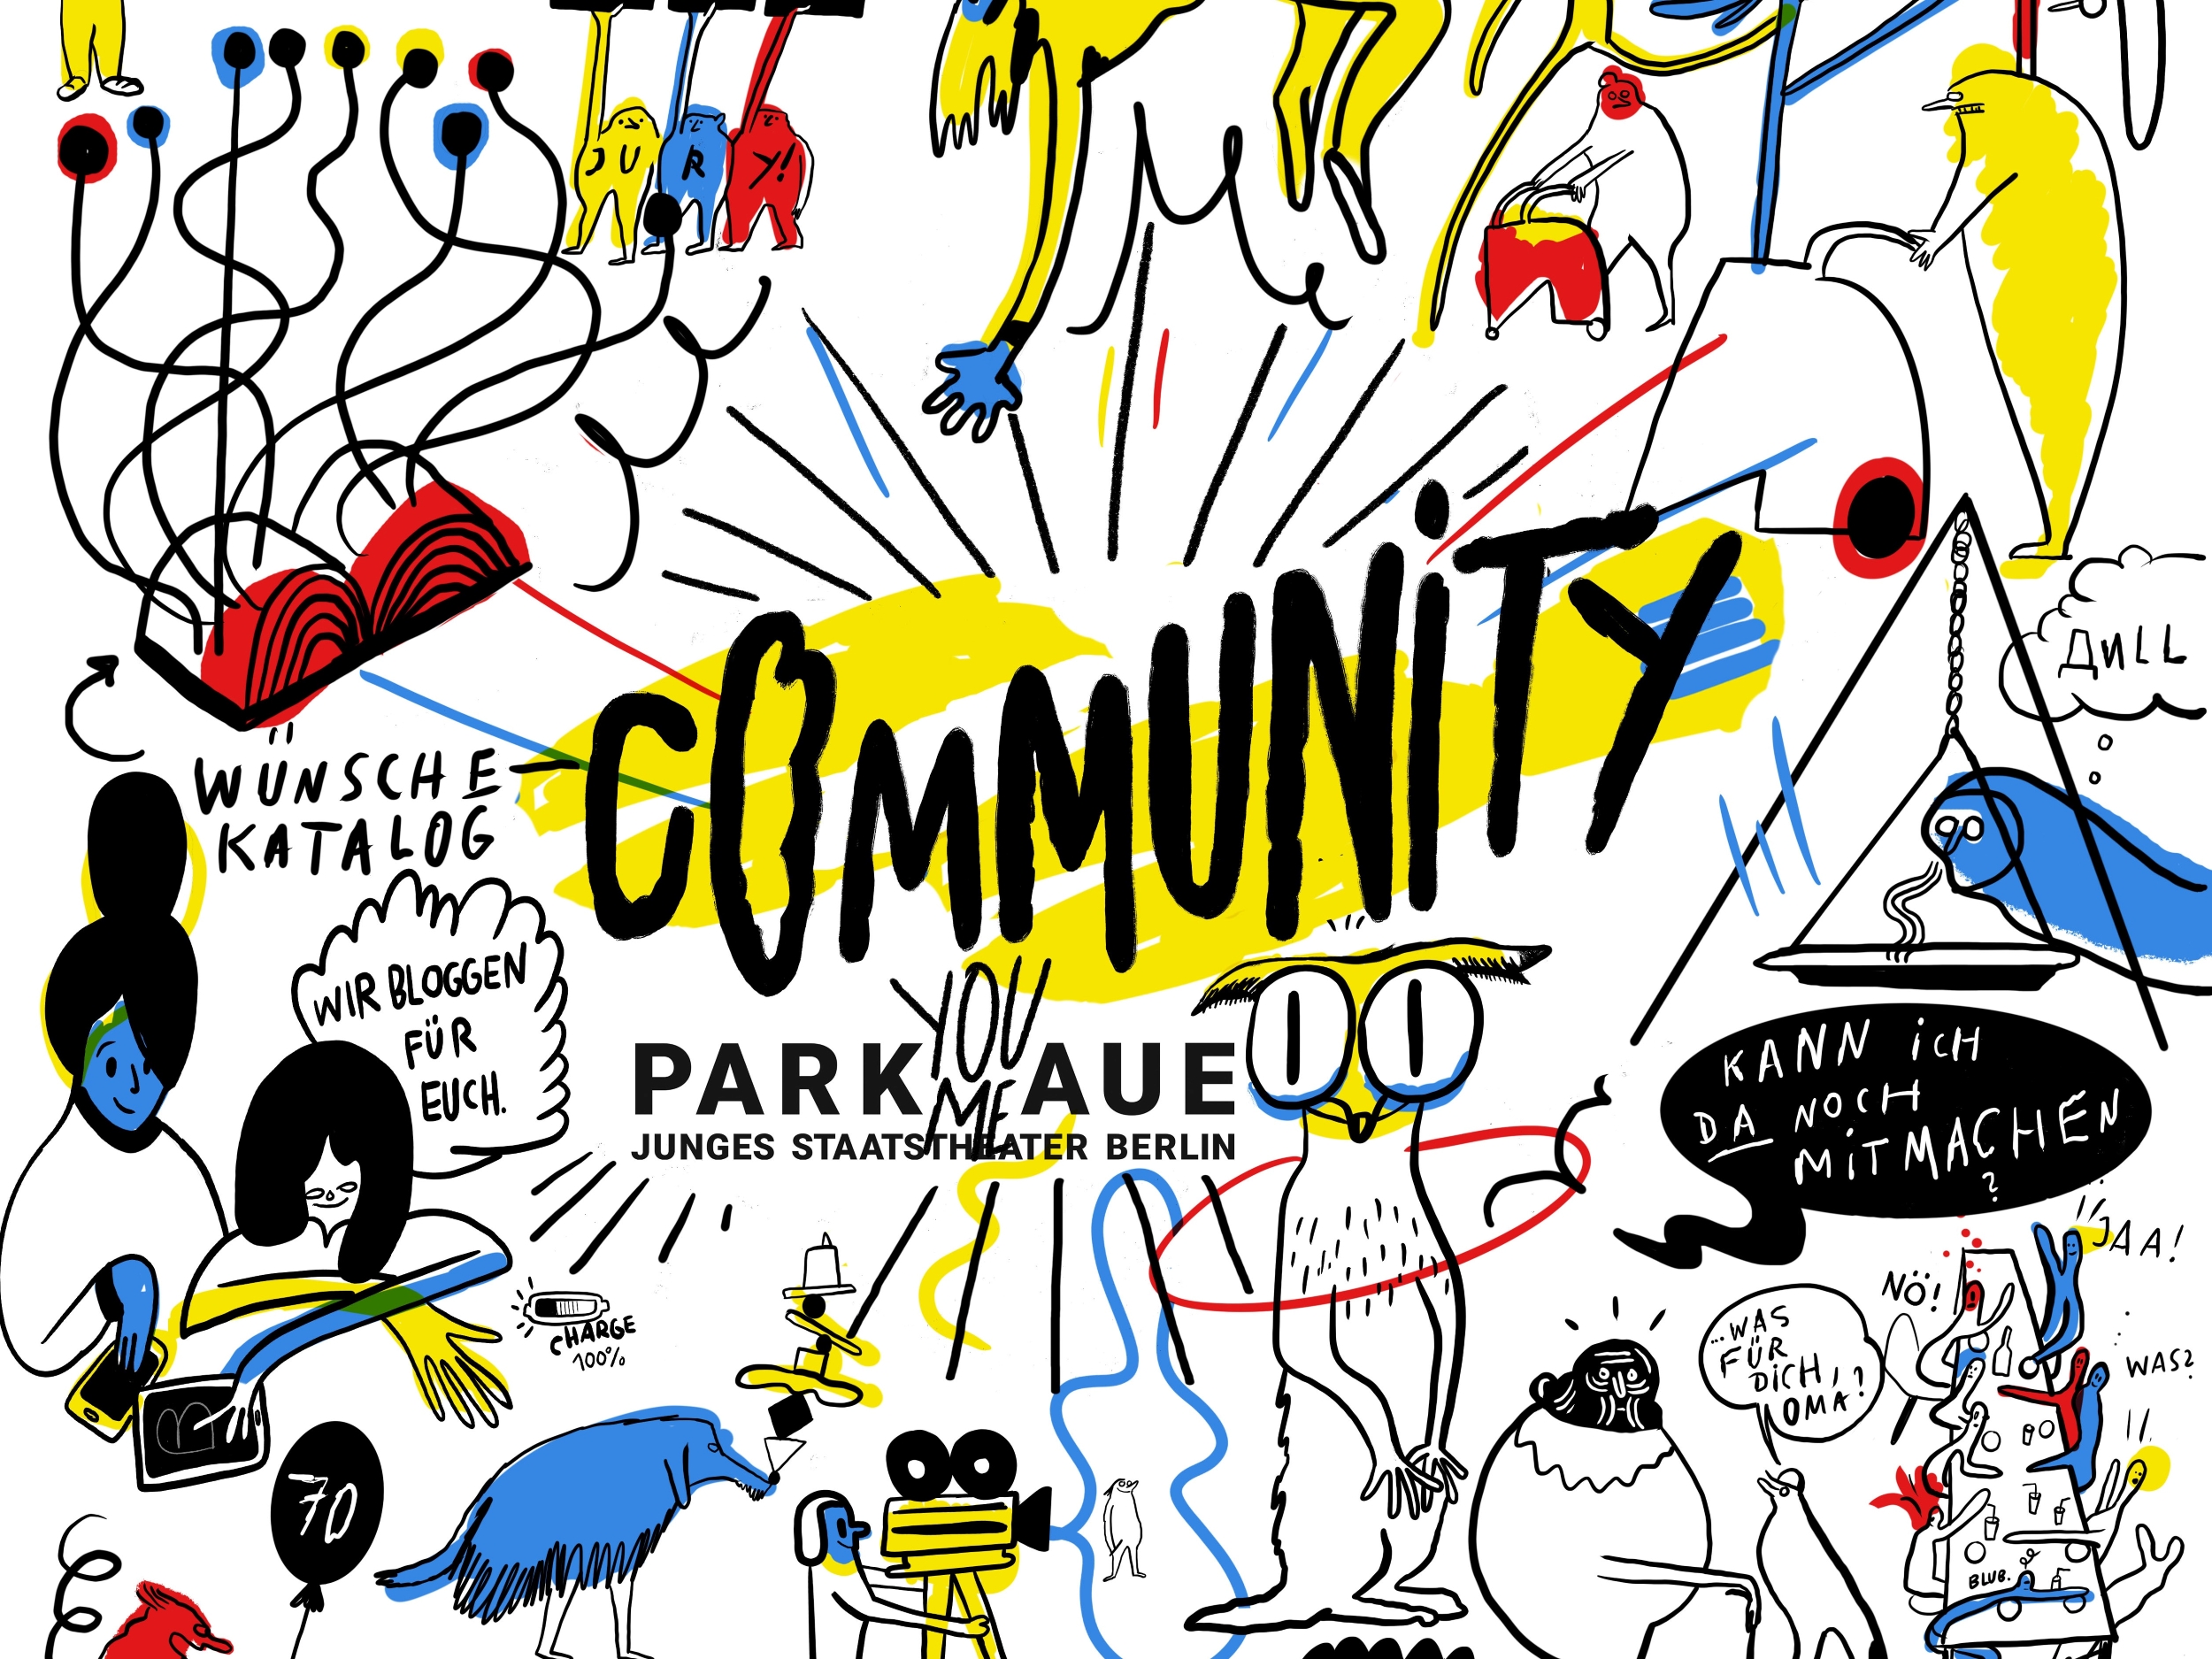 Ausschnitt aus einer Comiczeichnung. Man sieht verschiedene Symbole für das Community Programm. In der mitte ist das Parkaue-Community-Logo. Die zeichnungen sind schwarz auf weißem Hintergrund, es gibt rote, blaue und gelbe Farbflecken.